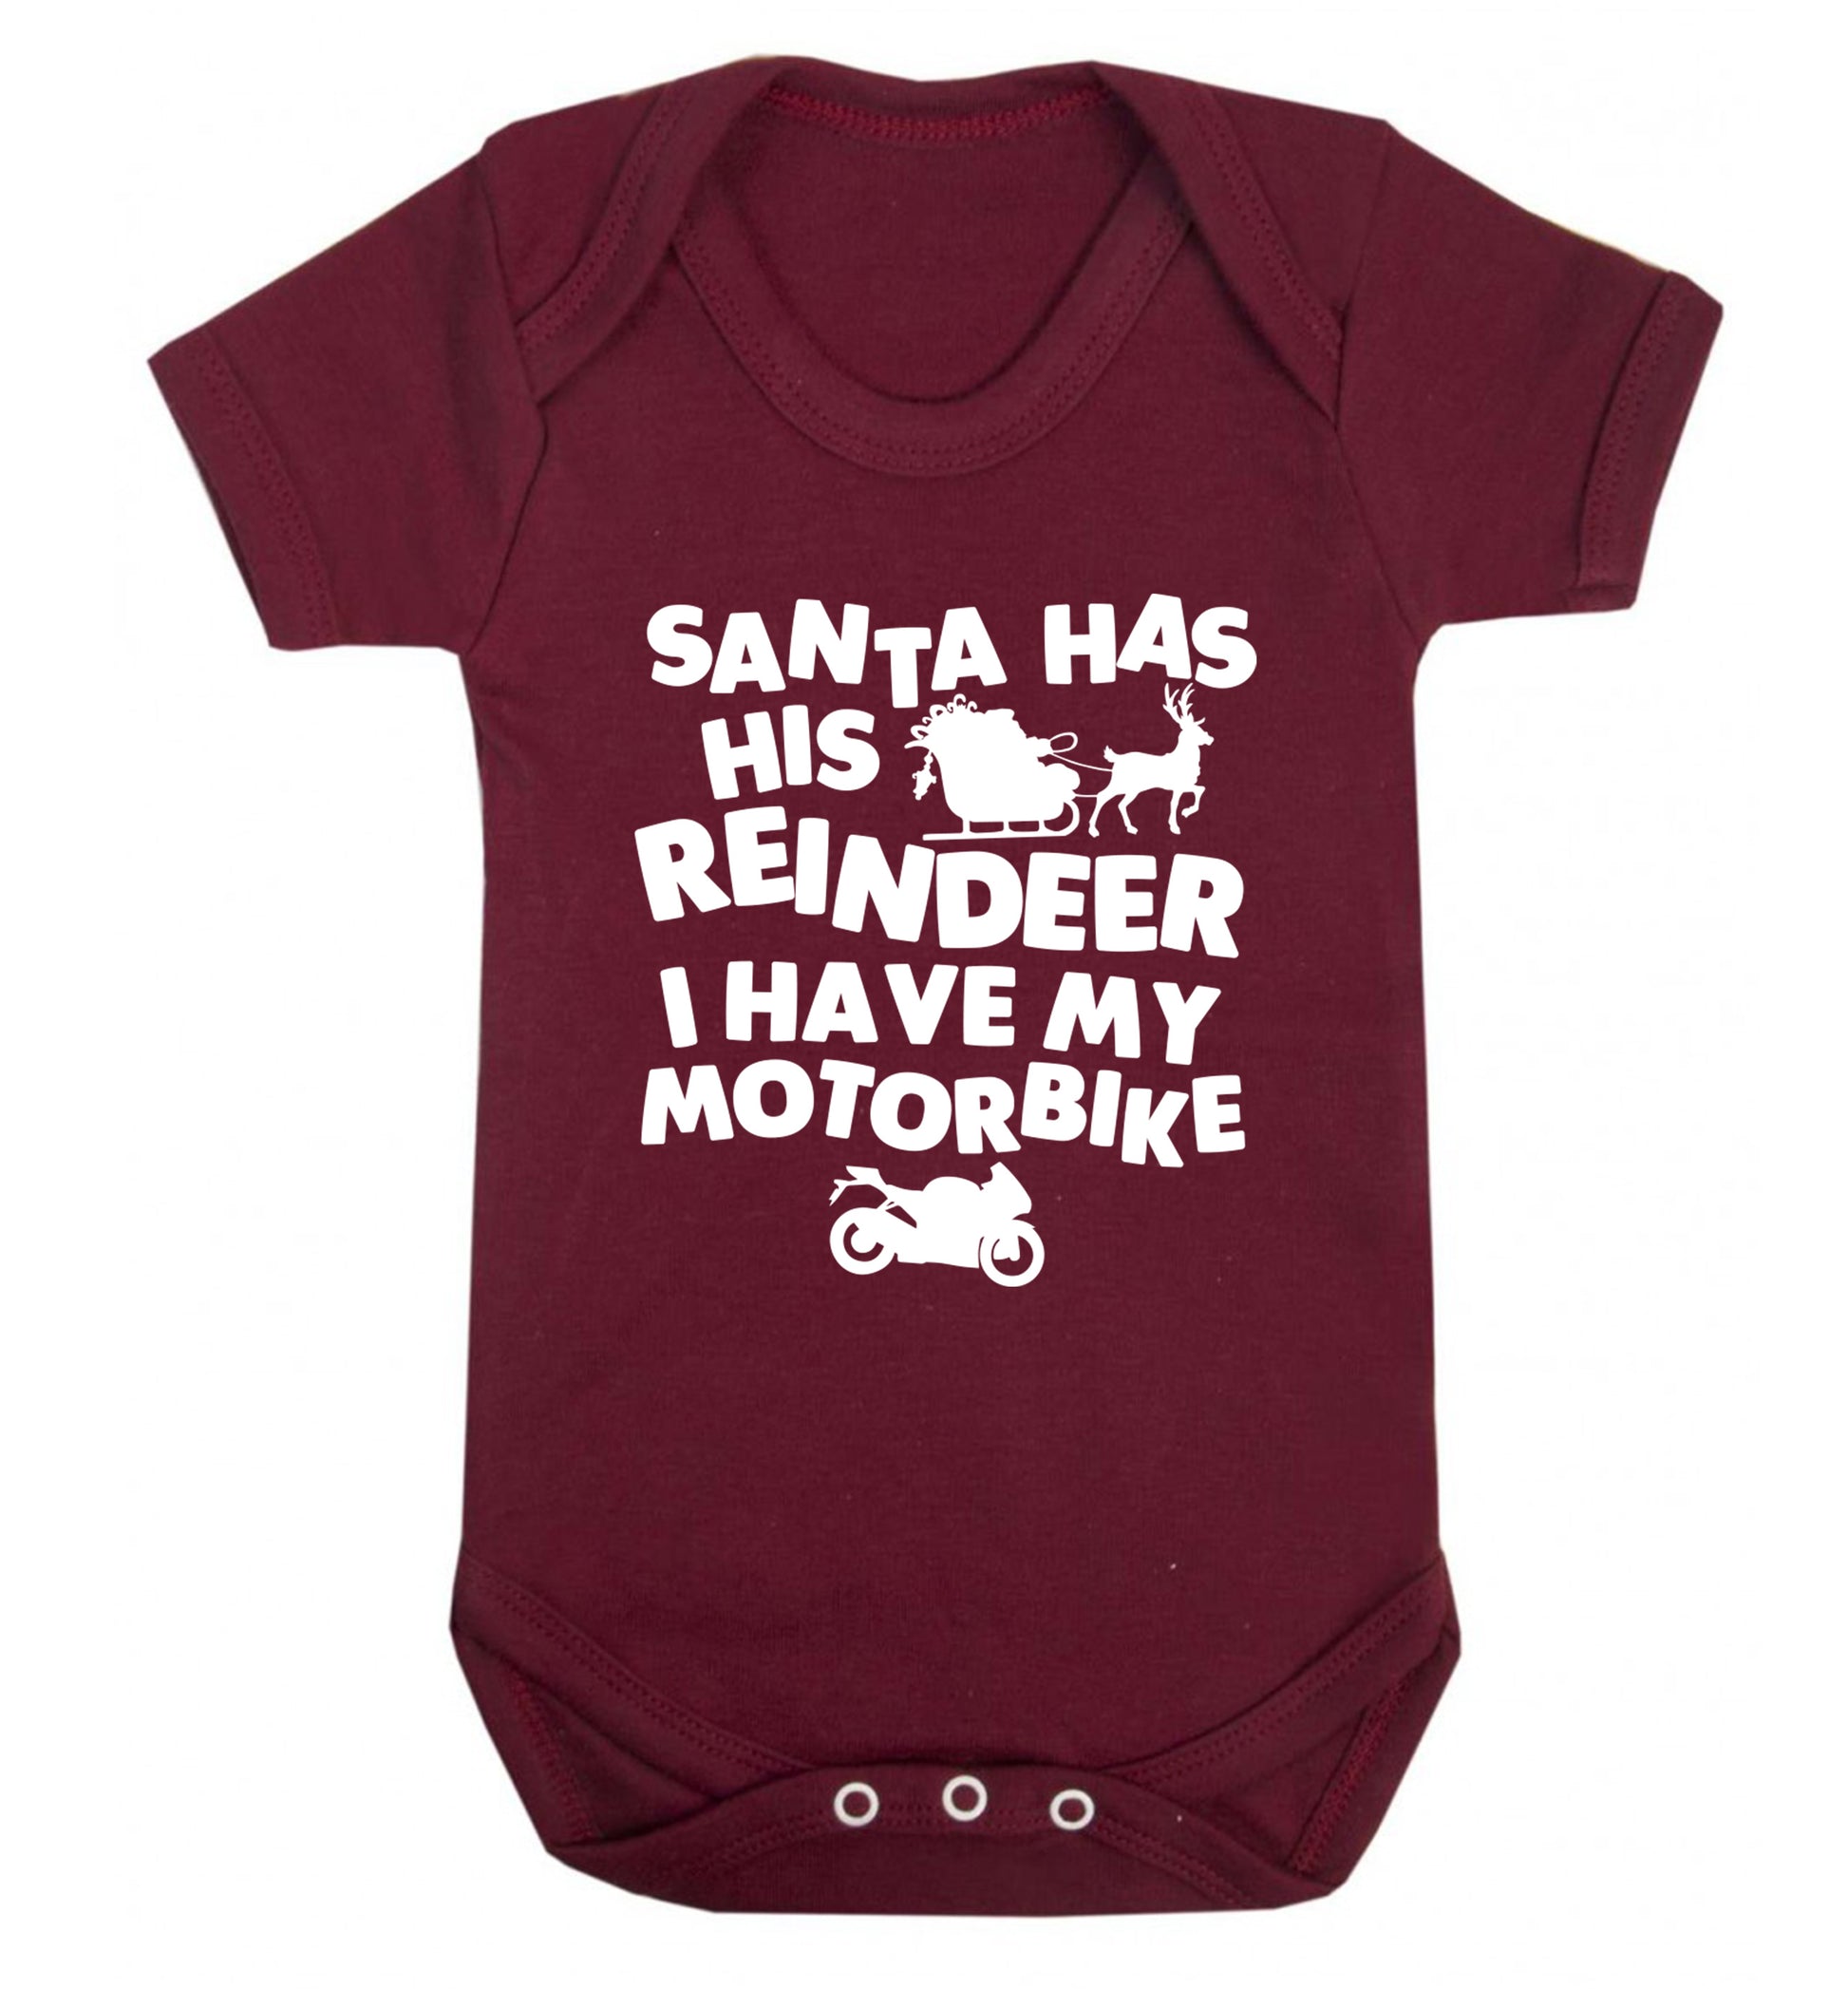 Santa has his reindeer I have my motorbike Baby Vest maroon 18-24 months